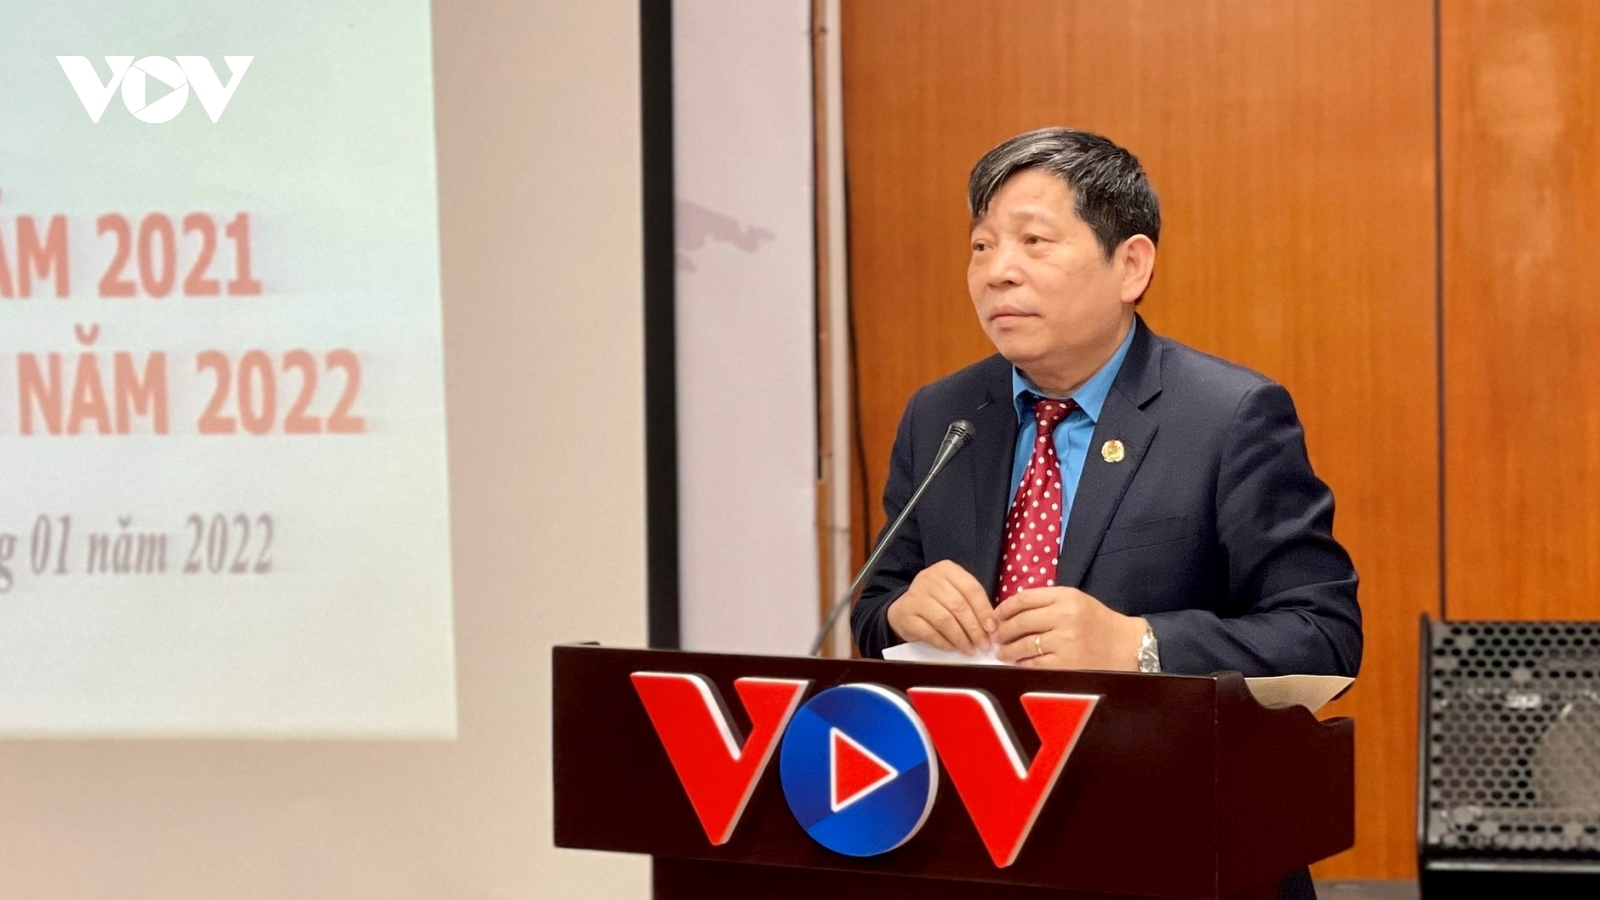 Công đoàn VOV tổng kết hoạt động năm 2021, phương hướng nhiệm vụ năm 2022